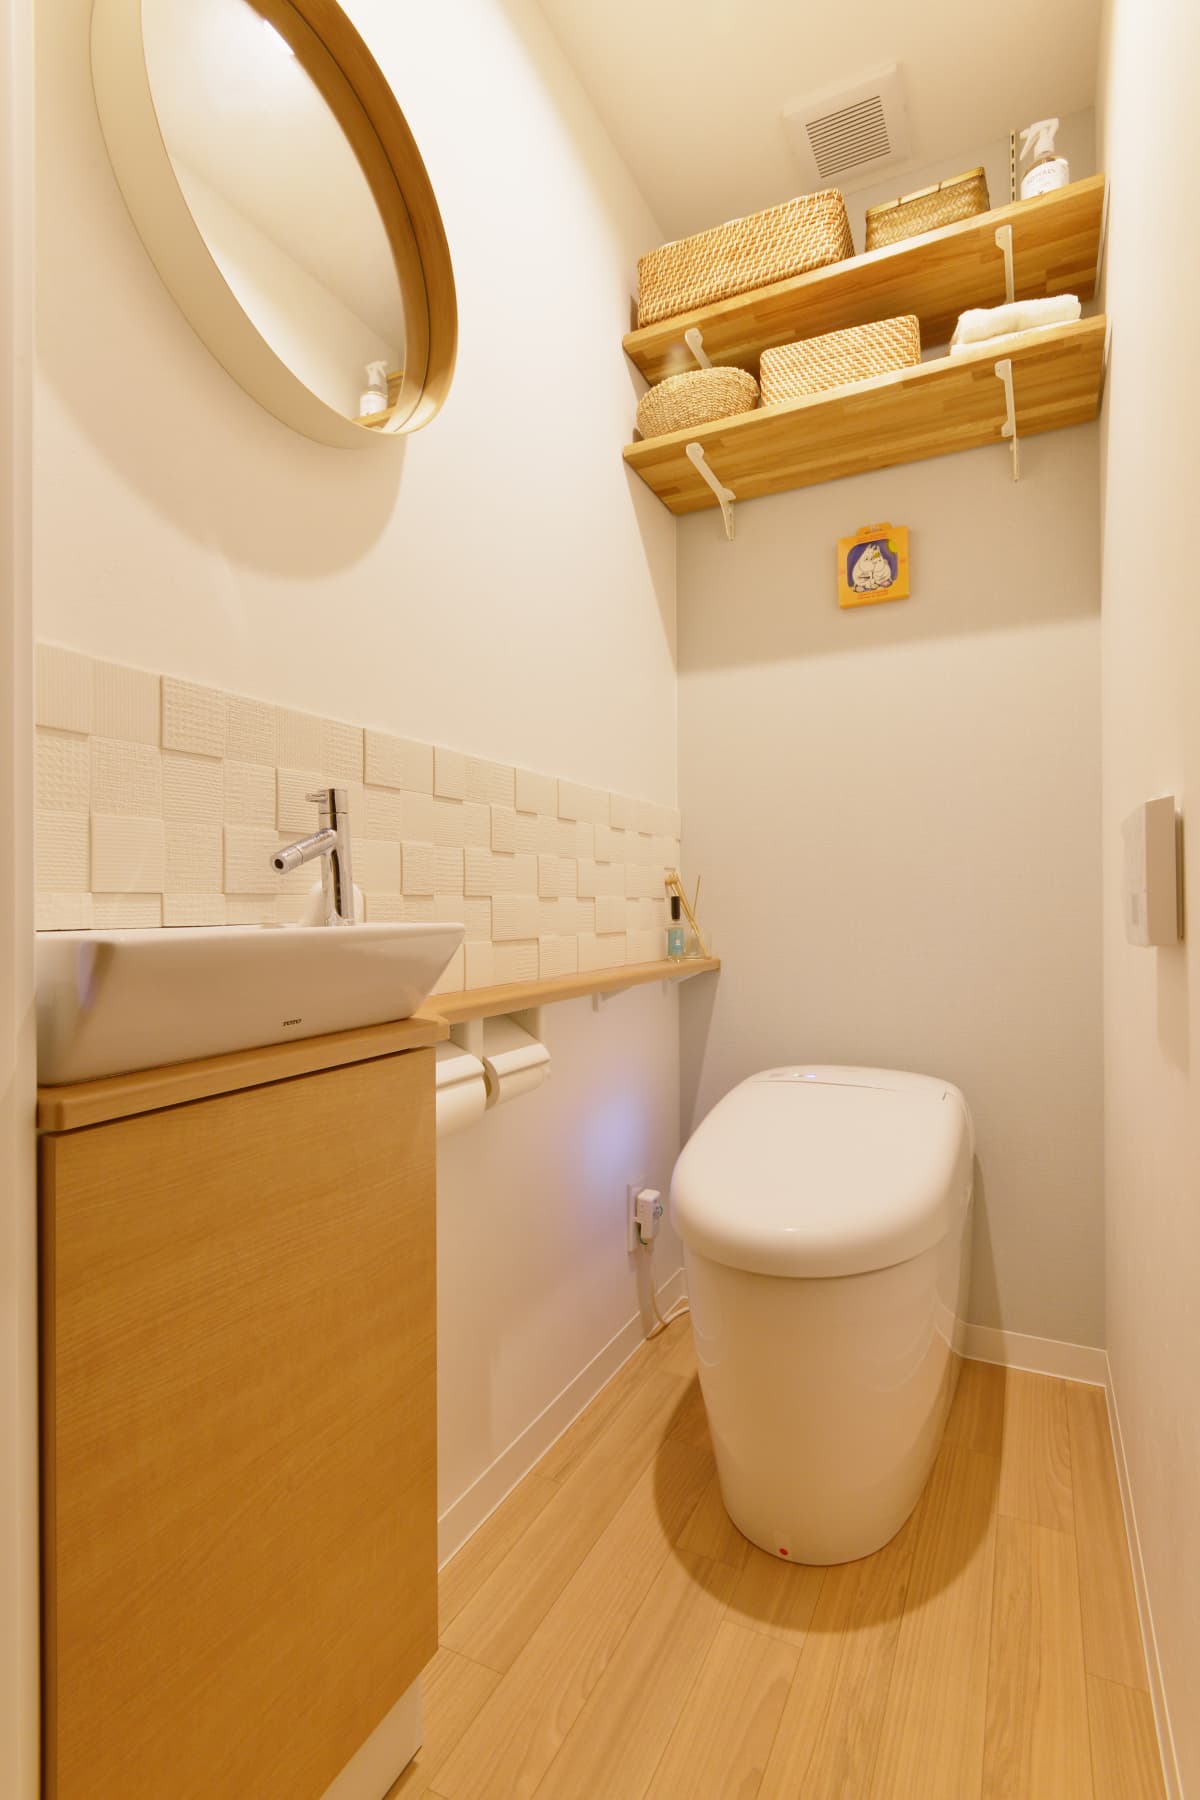 丸いミラーと無垢の木の棚板が可愛いトイレ空間